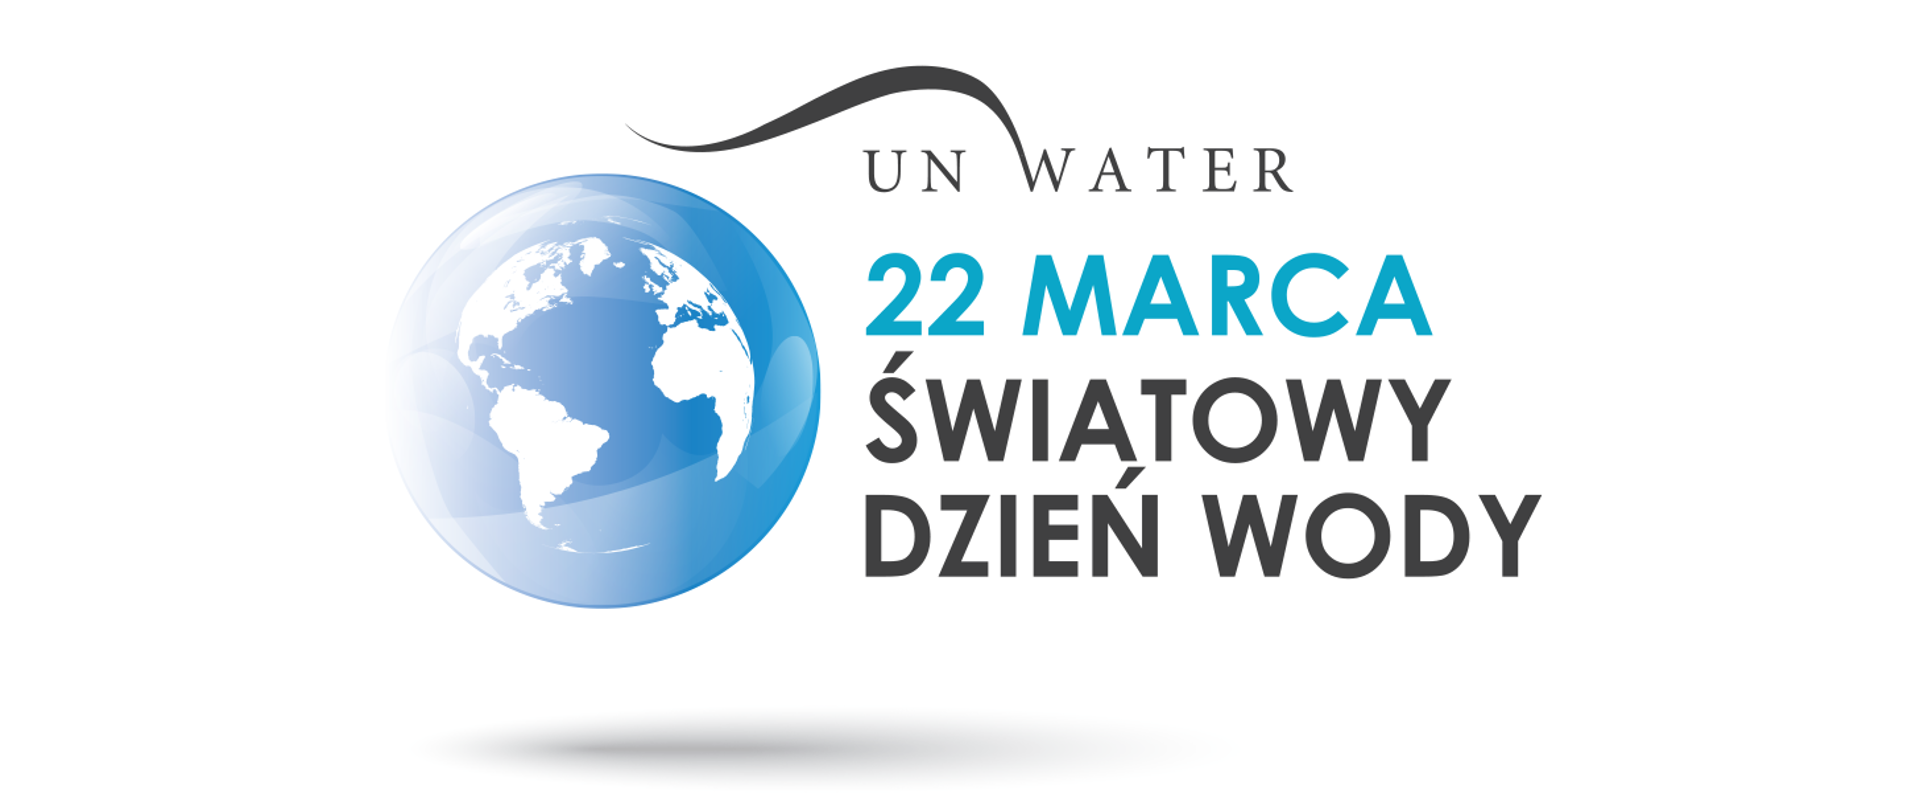 UN Water - 22 Marca Światowy Dzień Wody